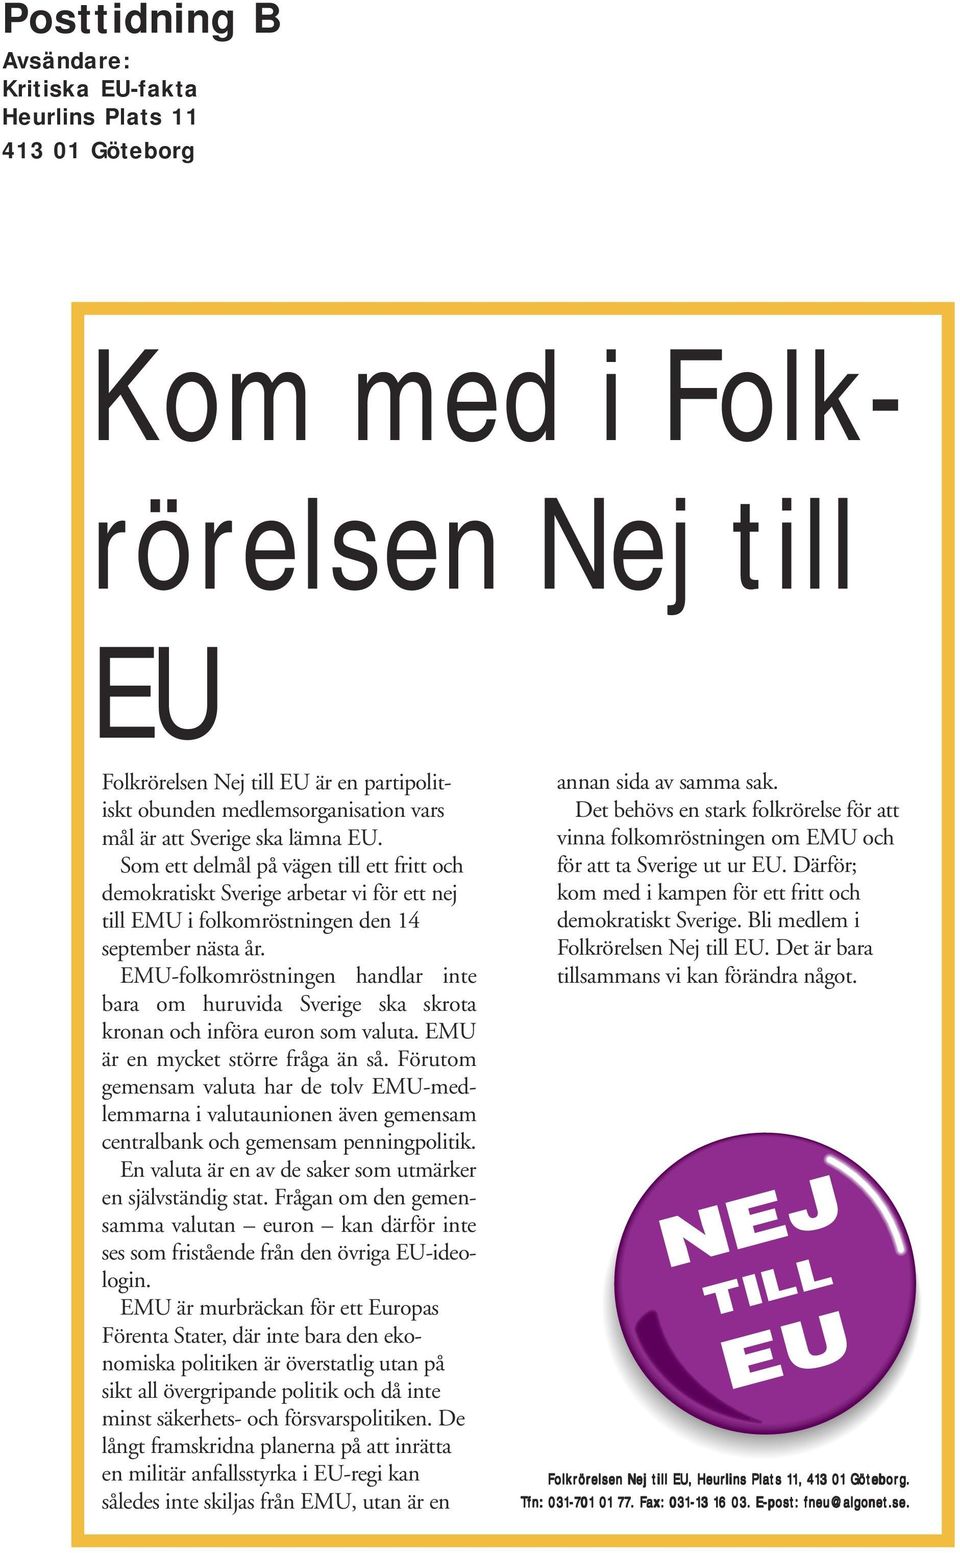 EMU-folkomröstningen handlar inte bara om huruvida Sverige ska skrota kronan och införa euron som valuta. EMU är en mycket större fråga än så.